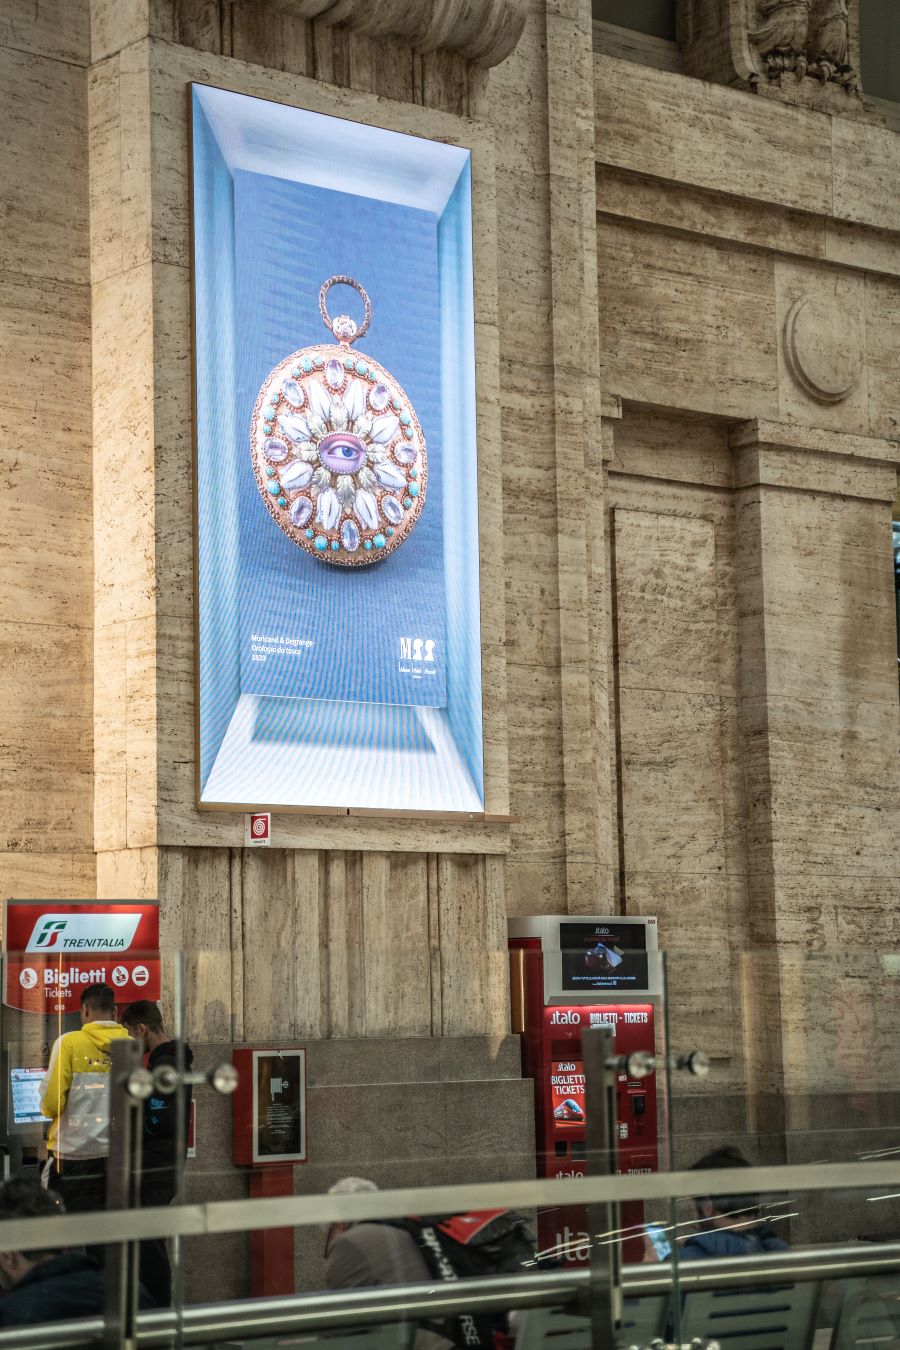 Green Retail  - A Milano Centrale si accende il “Mosaico”, l’impianto pubblicitario che promuove l’arte 